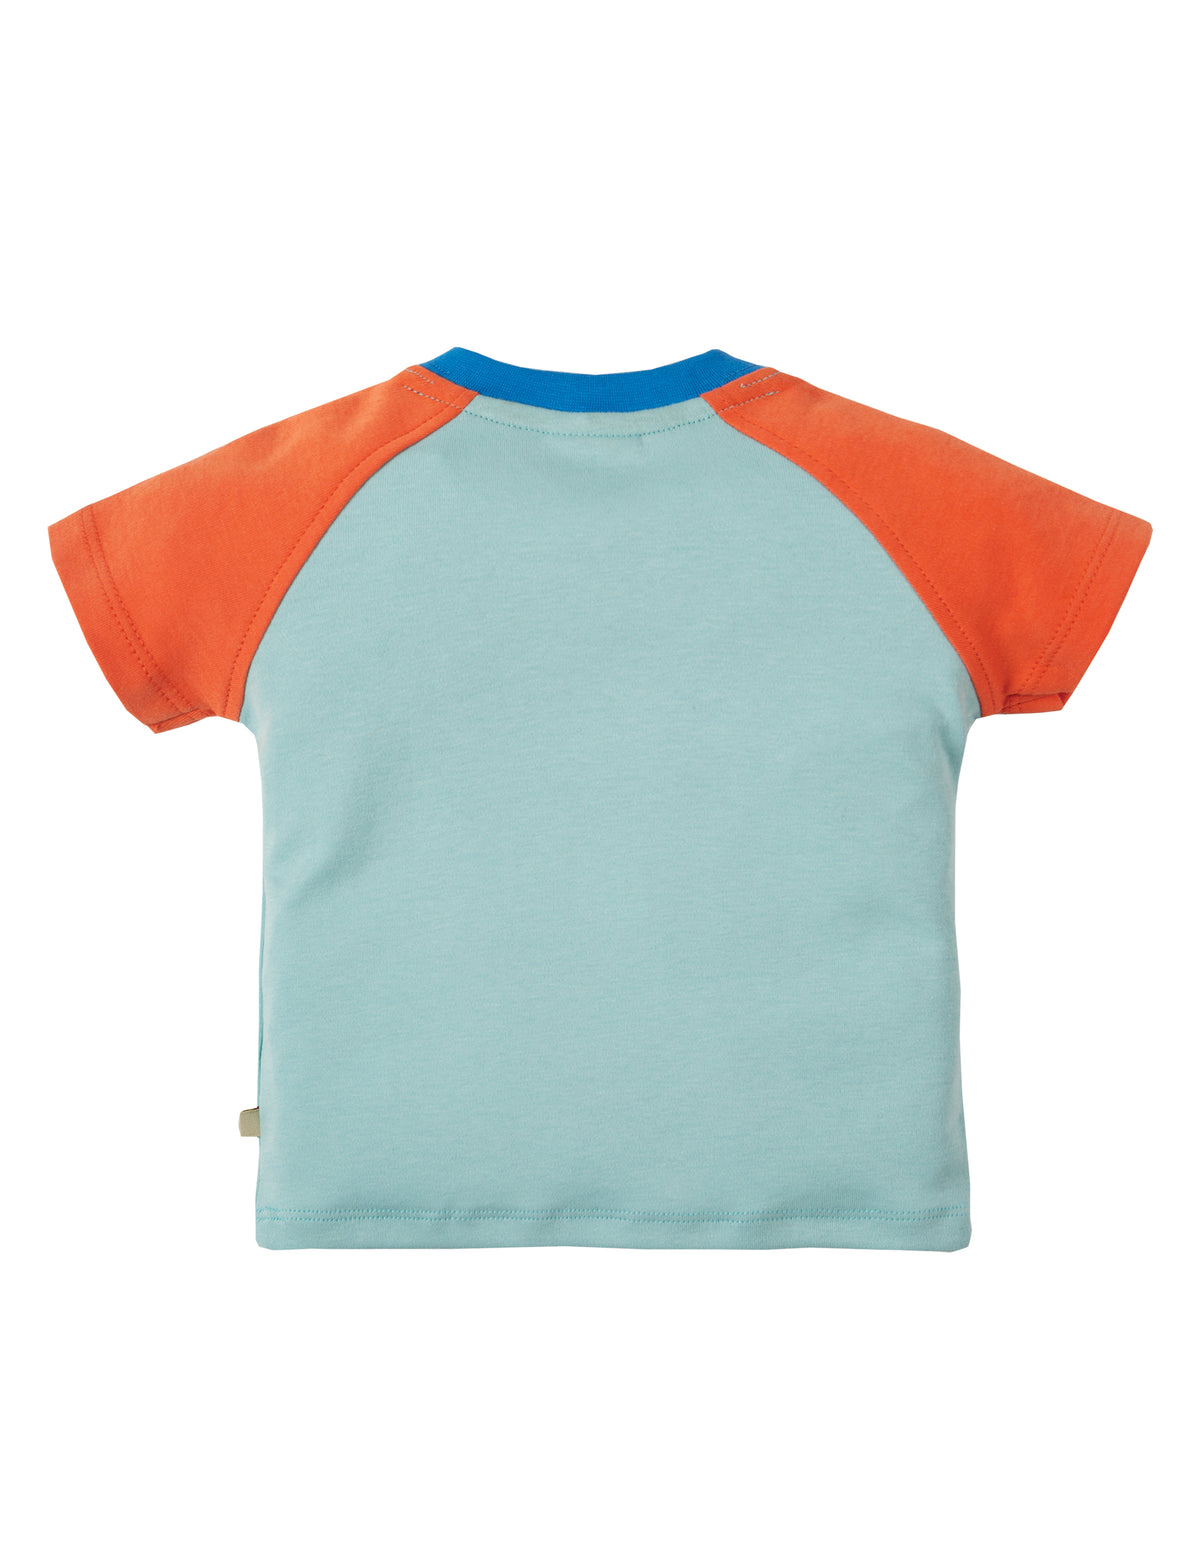 Kurzarm T-Shirt mit Fische Applikation ( 6-12 Monate, 12-18 Monate ) von Frugi